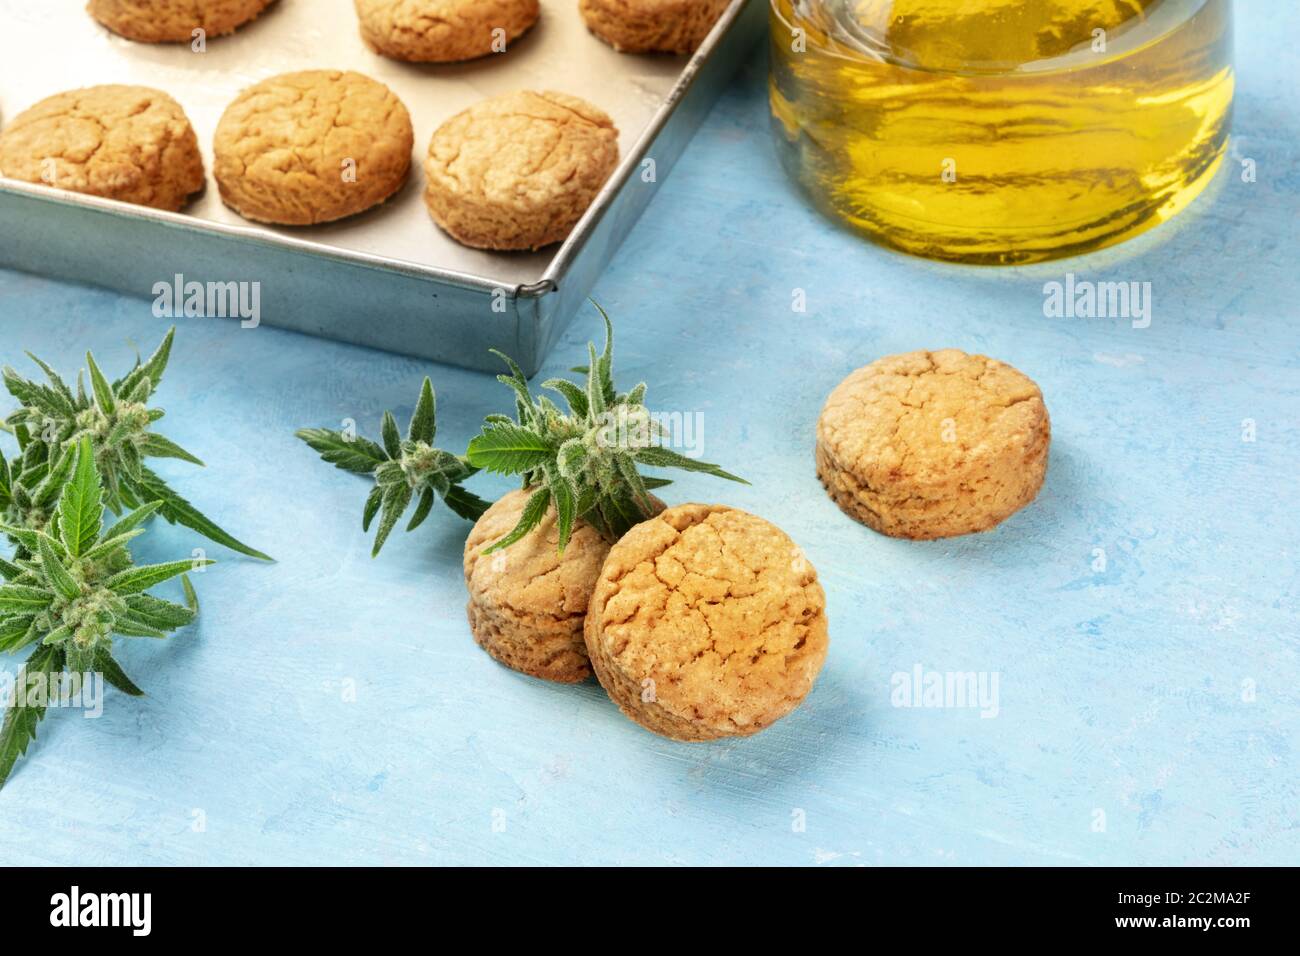 Cannabis butter Cookies mit Marihuana Knospen und cannaoil, hausgemachte gesunde Kekse, Nahaufnahme auf einem blauen Hintergrund Stockfoto